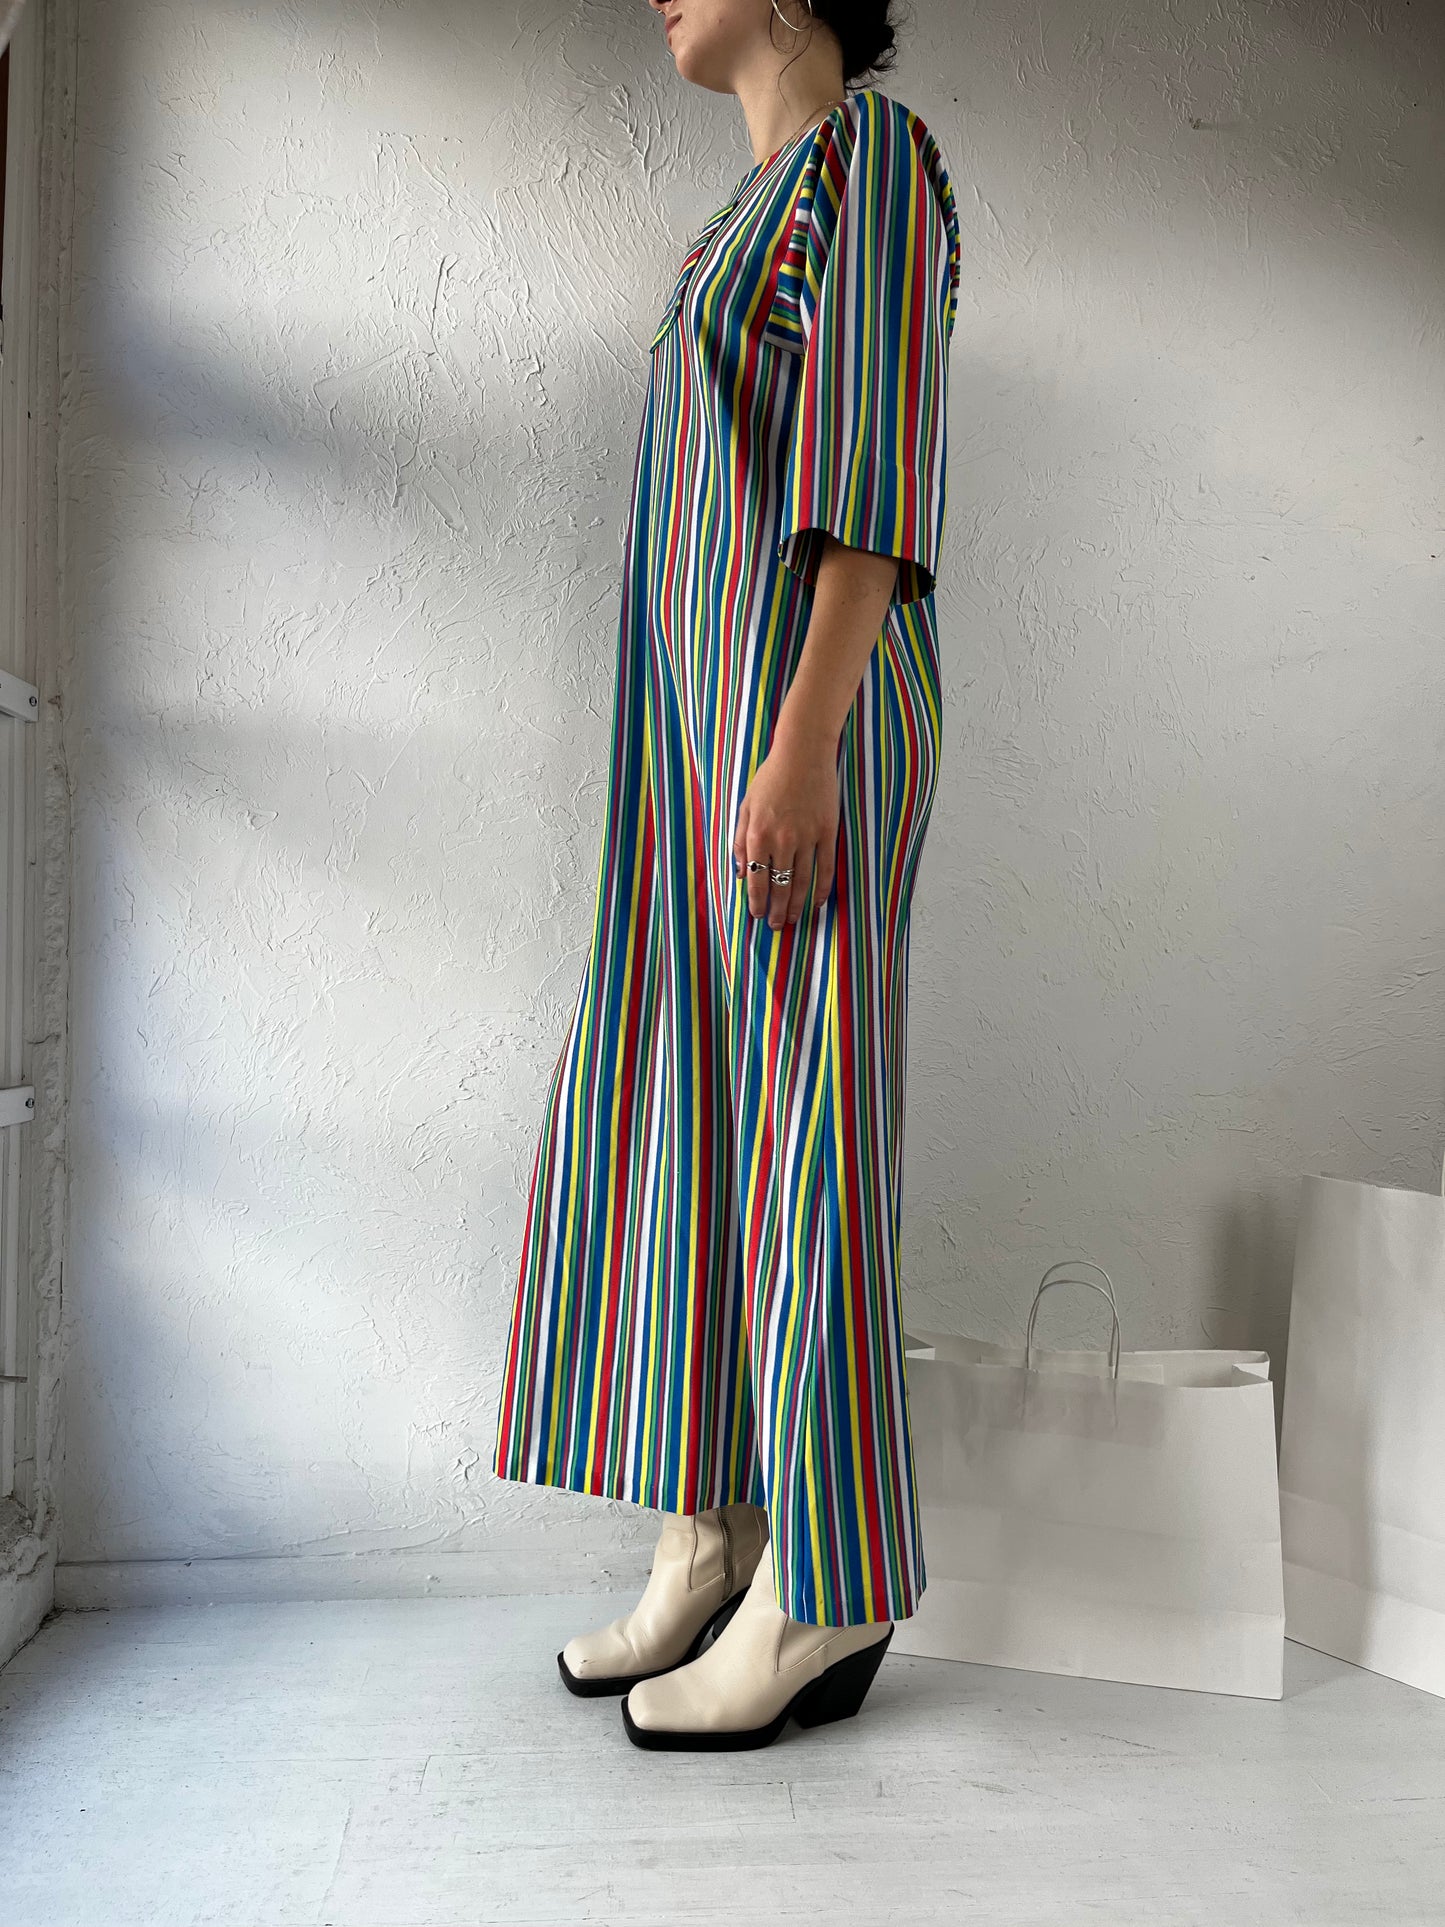 70s Striped Rainbow Mumu Maxi Dress / Small